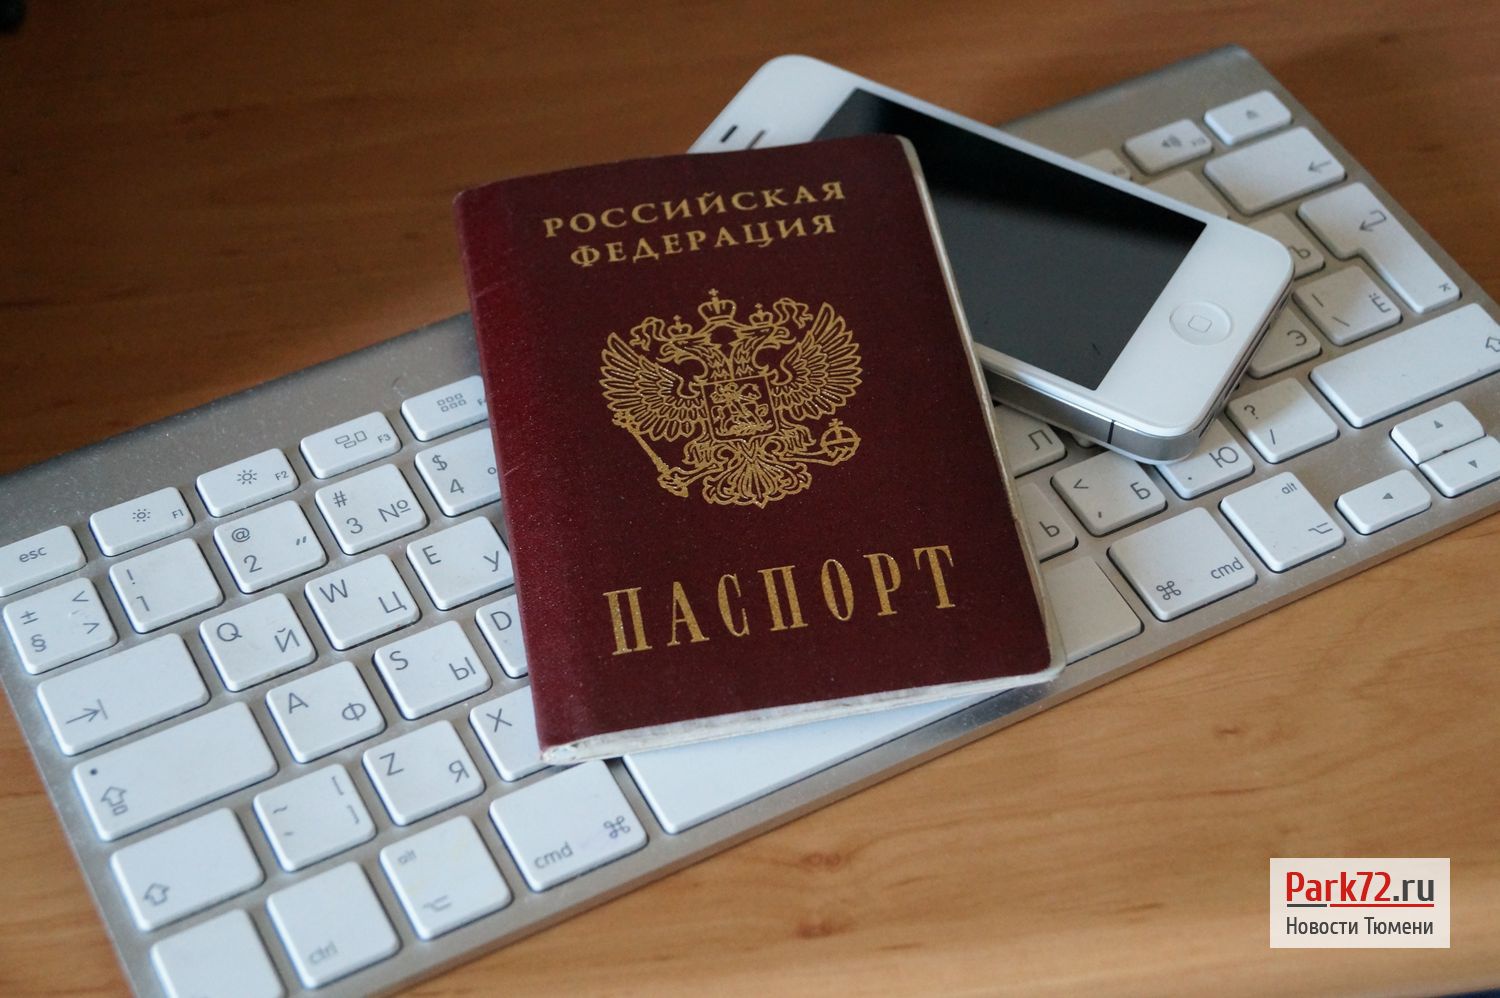 Регистрация в социальных сетях по паспорту - это верх безумия